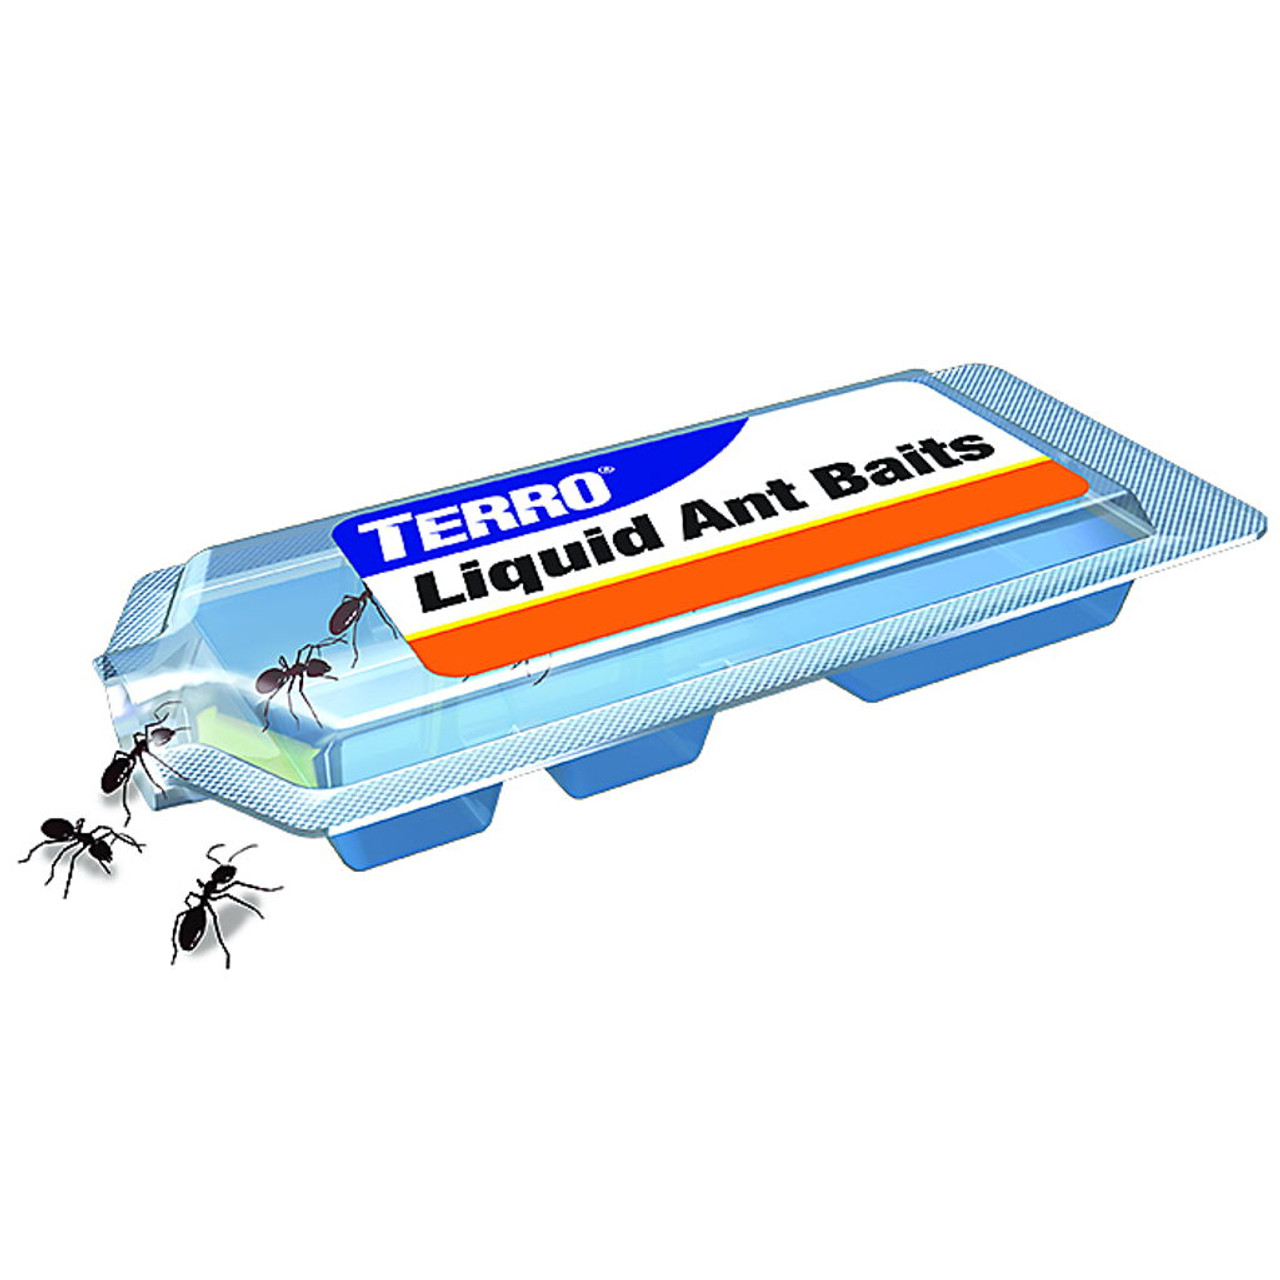 Terro Liquid Ant Bait